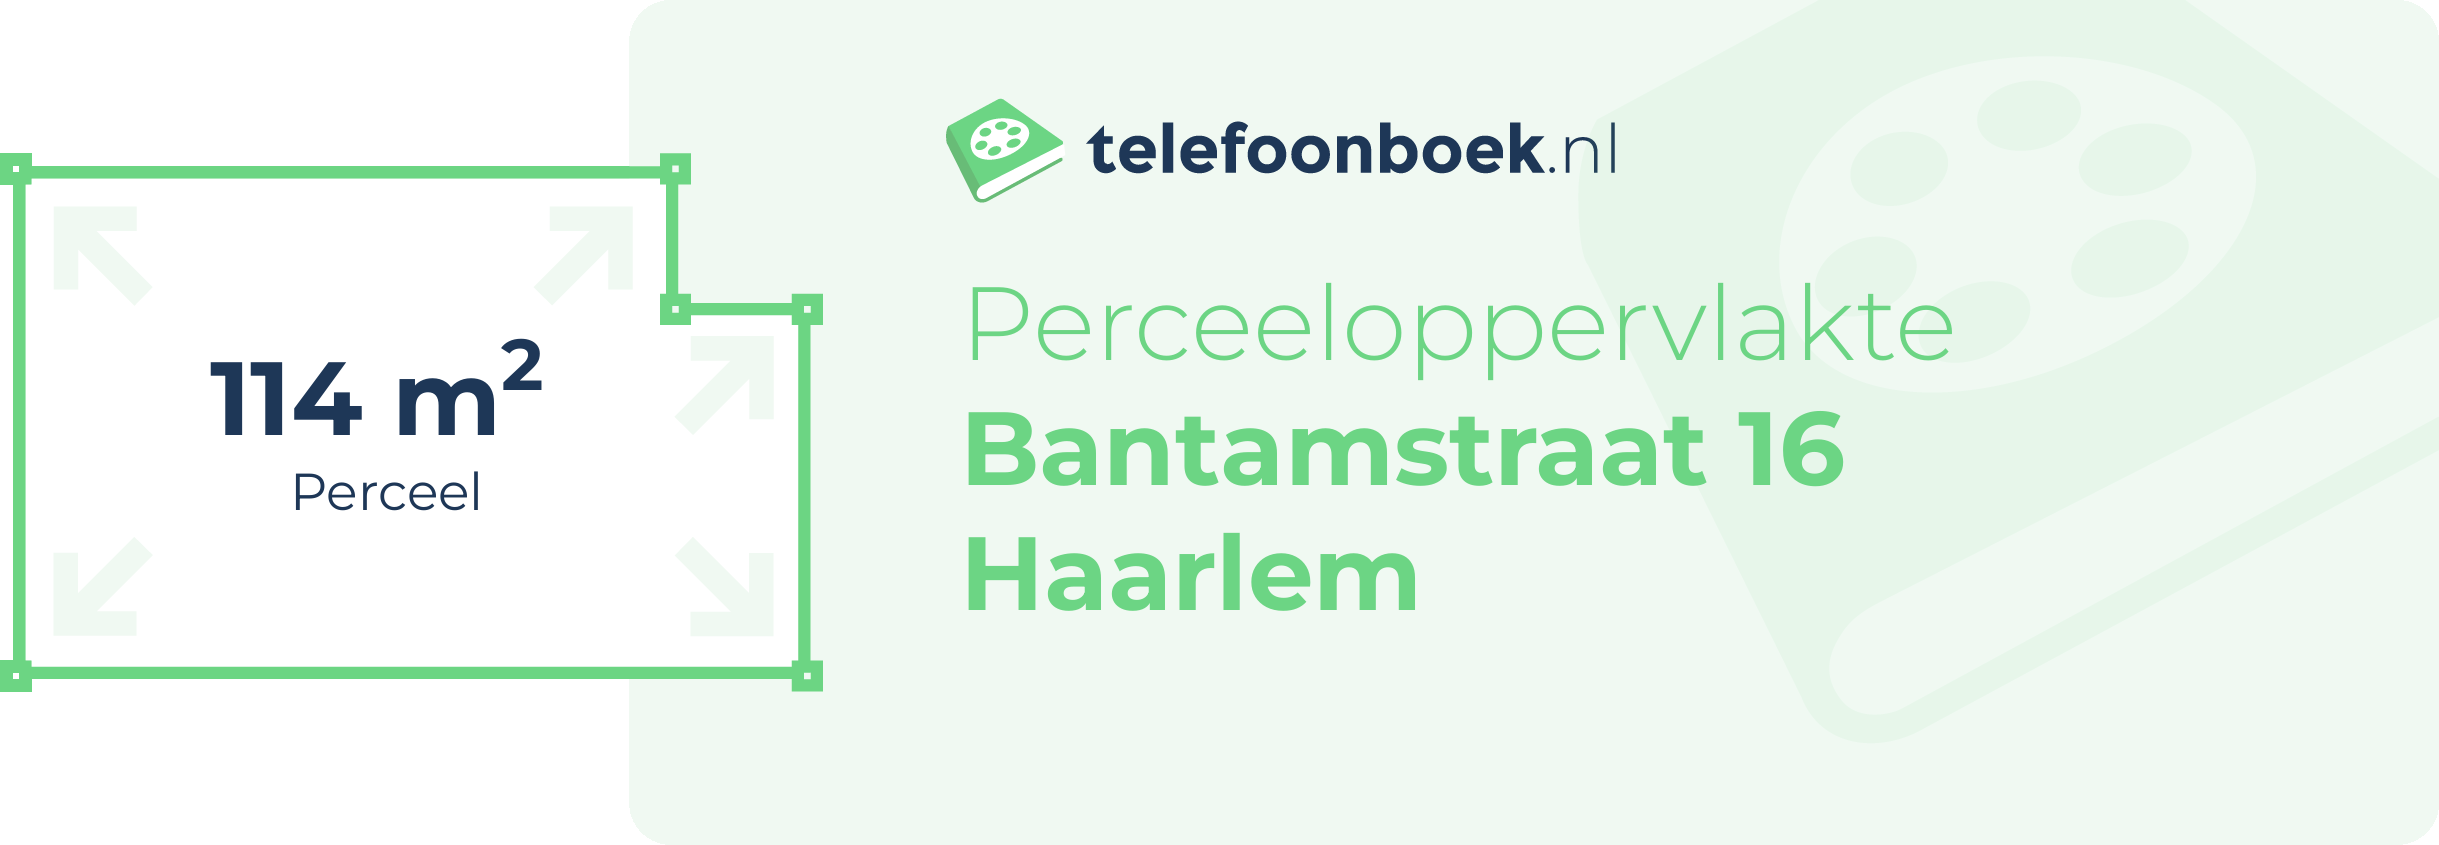 Perceeloppervlakte Bantamstraat 16 Haarlem